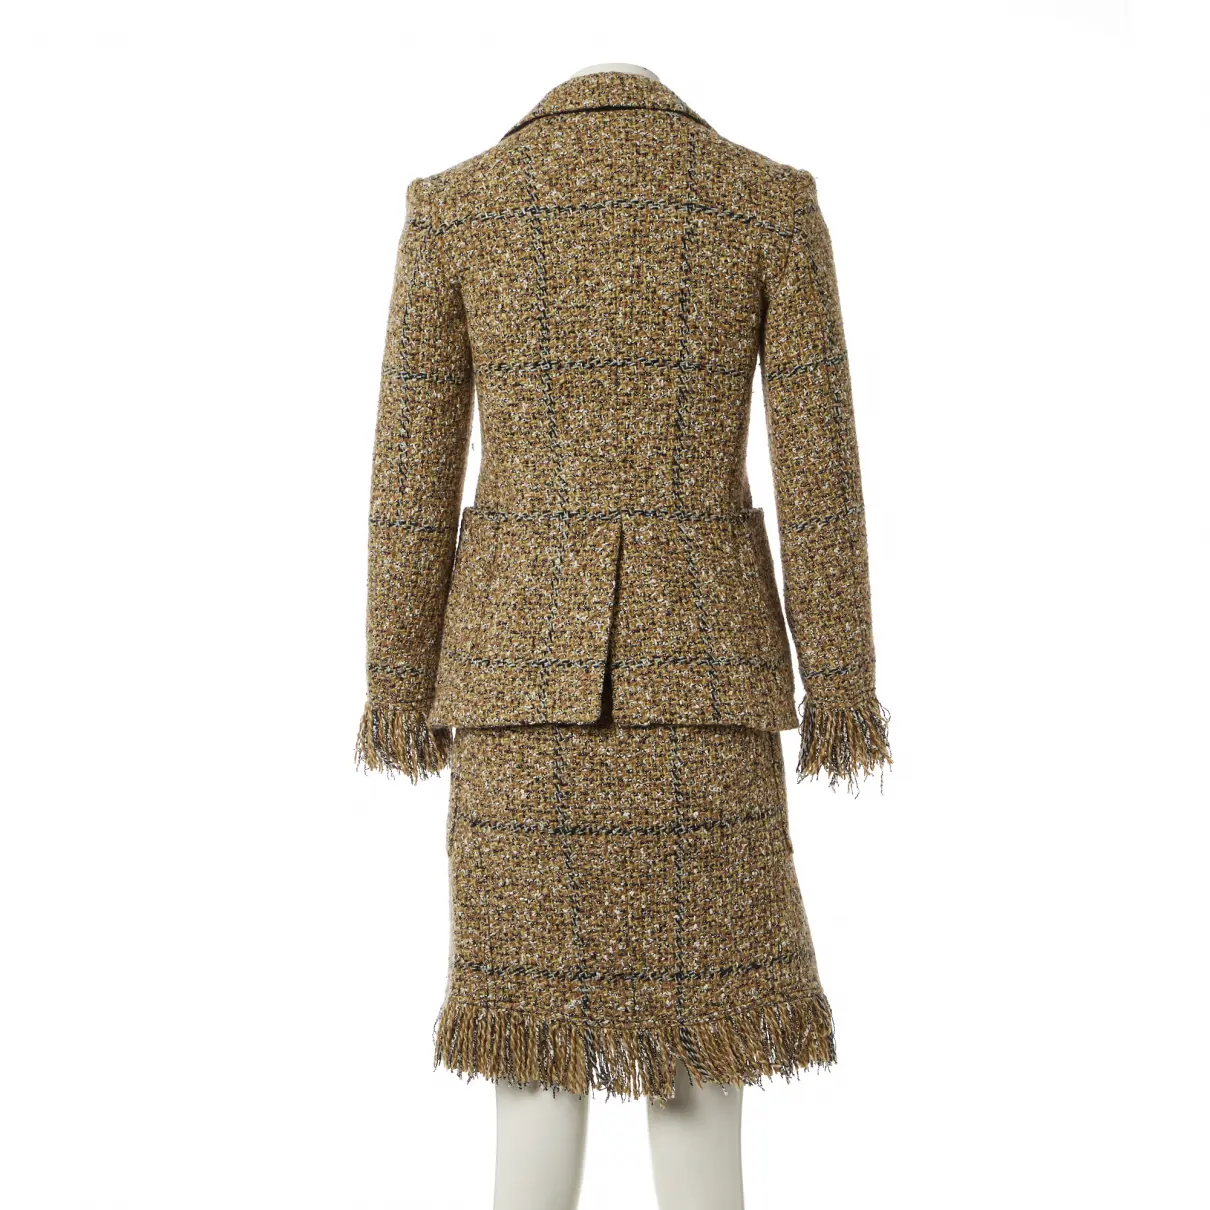 Buy Sonia Rykiel Tweed suit jacket online